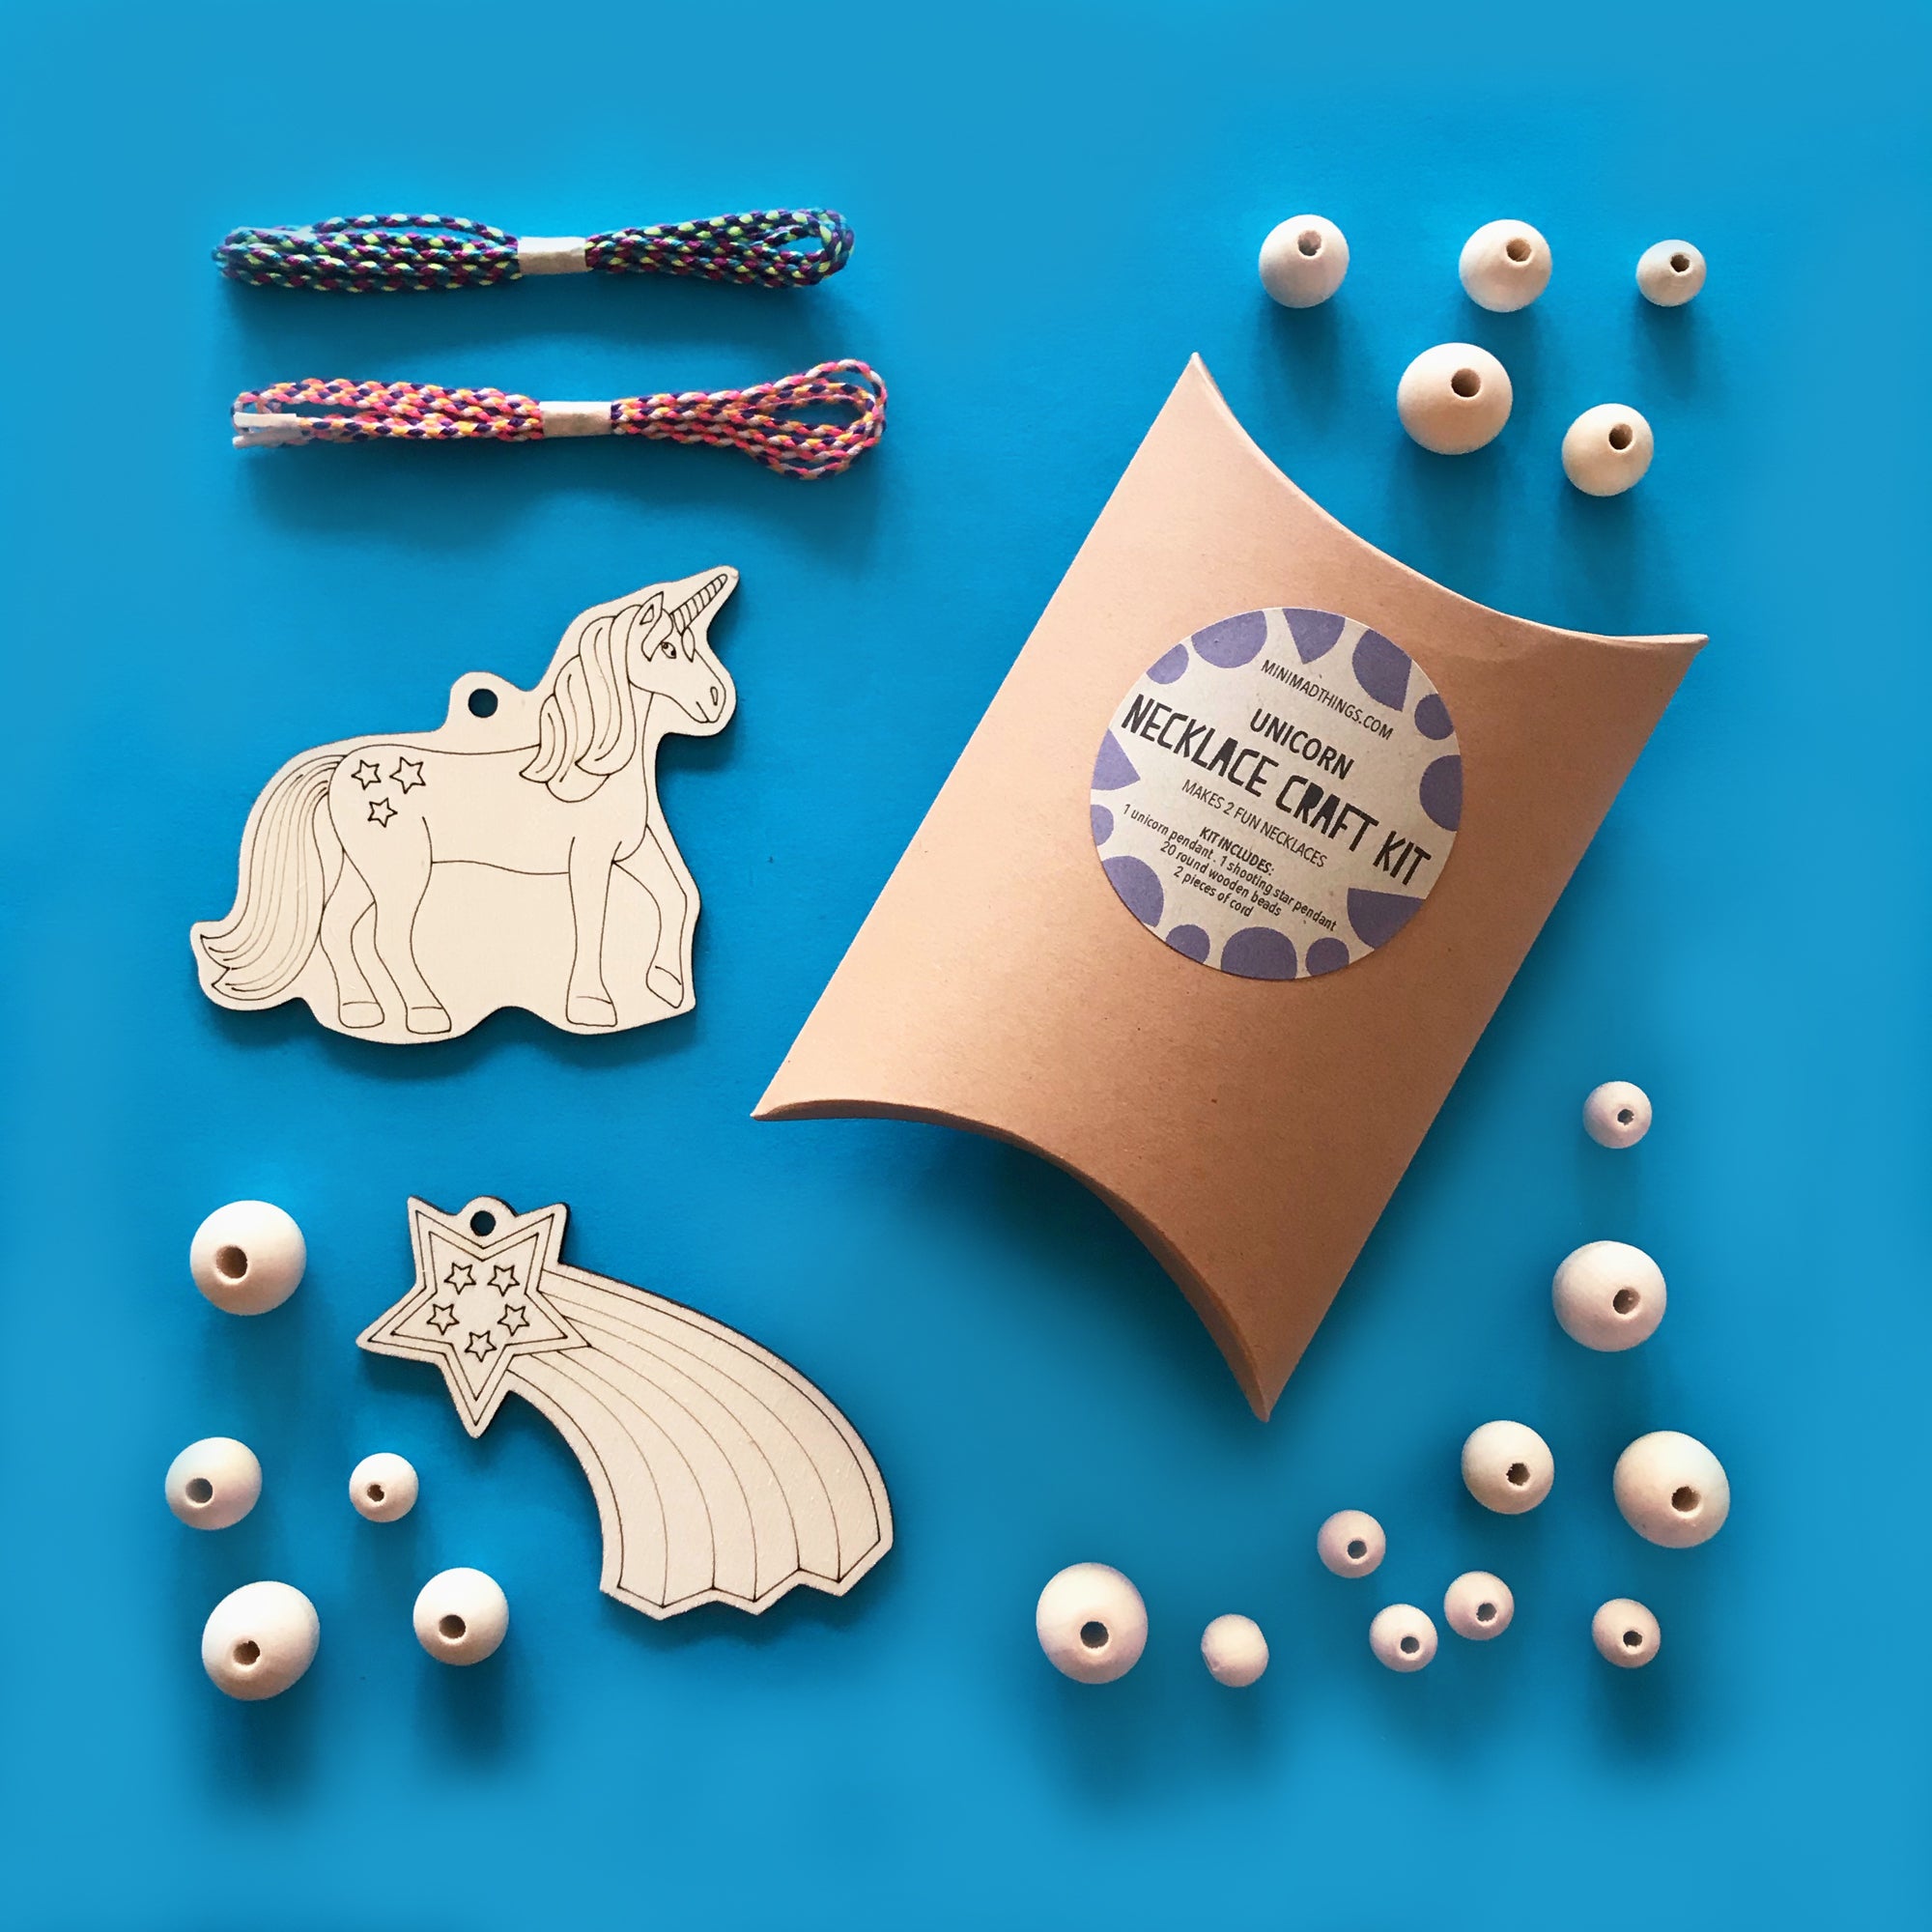 Necklace Craft Kit - Unicorn